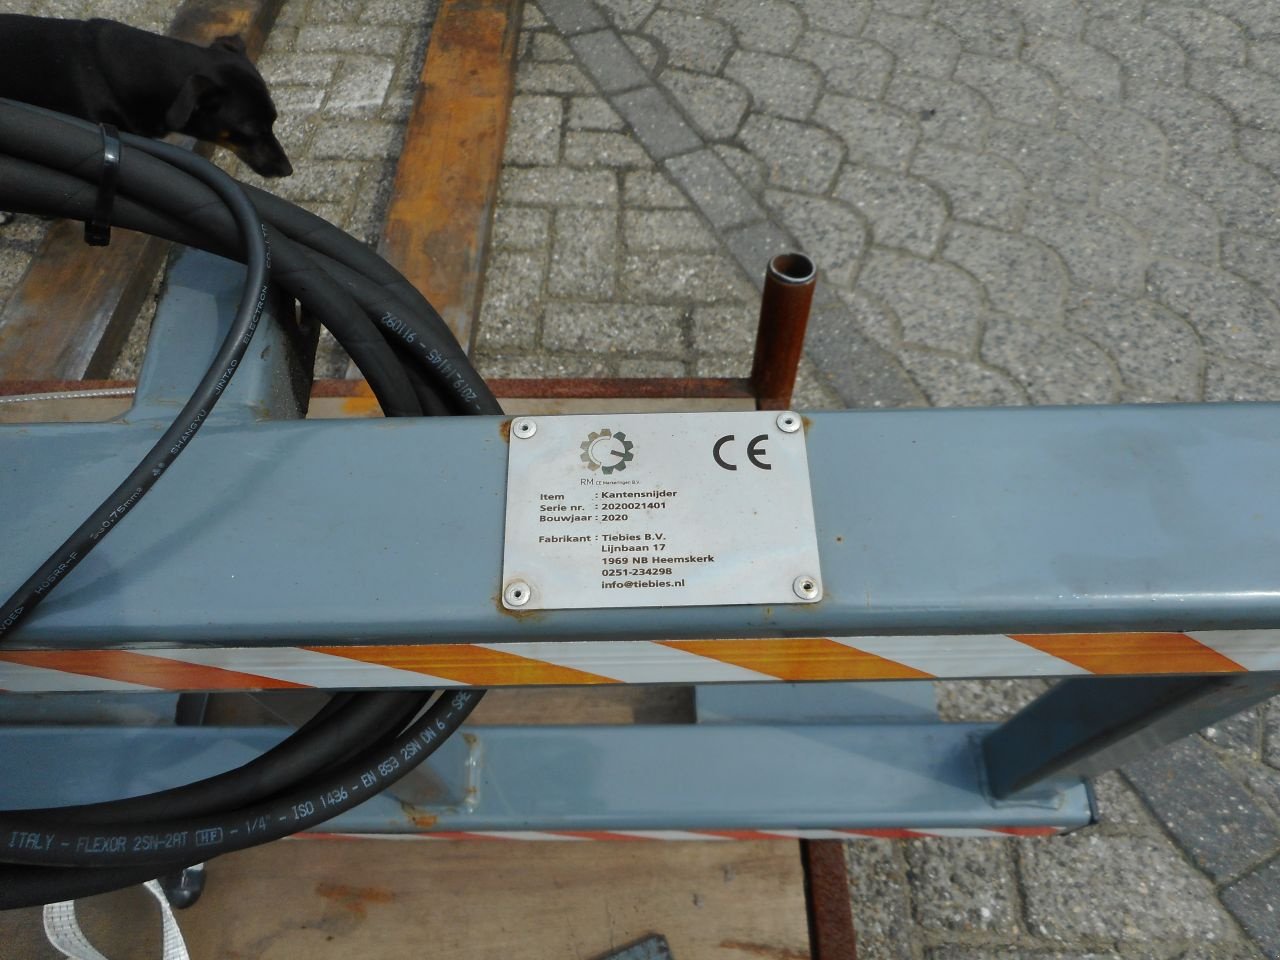 Wildkrautbürste des Typs Sonstige kantensnijder kantensnijder borstel, Gebrauchtmaschine in Hedel (Bild 3)